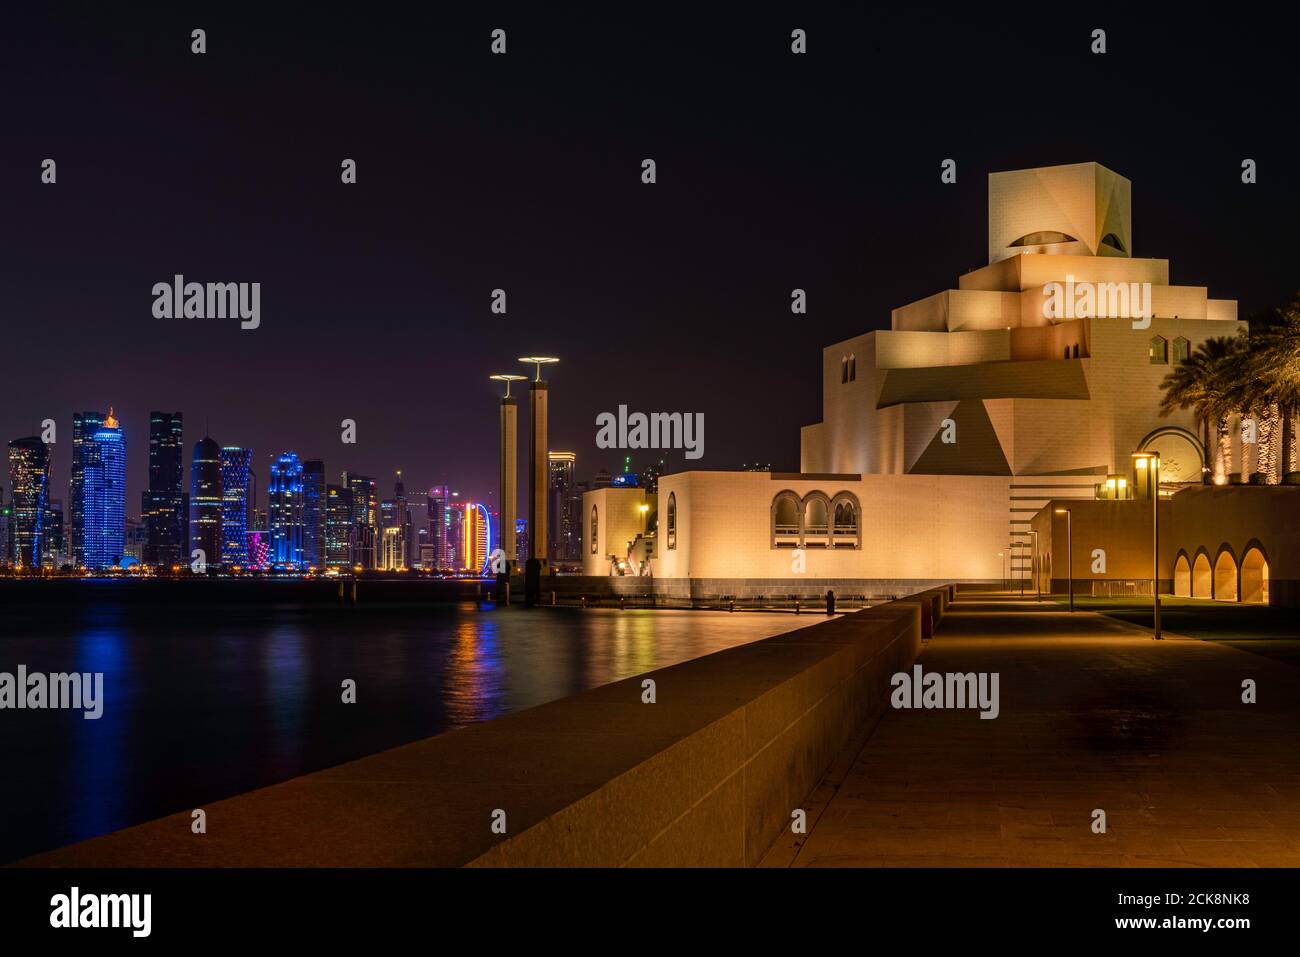 Doha, Katar - 26. August 2020: Museum für Islamische Kunst Gebäude in Doha, Katar, mit Nacht Skyline Hintergrund und Bay Water Reflexion Stockfoto